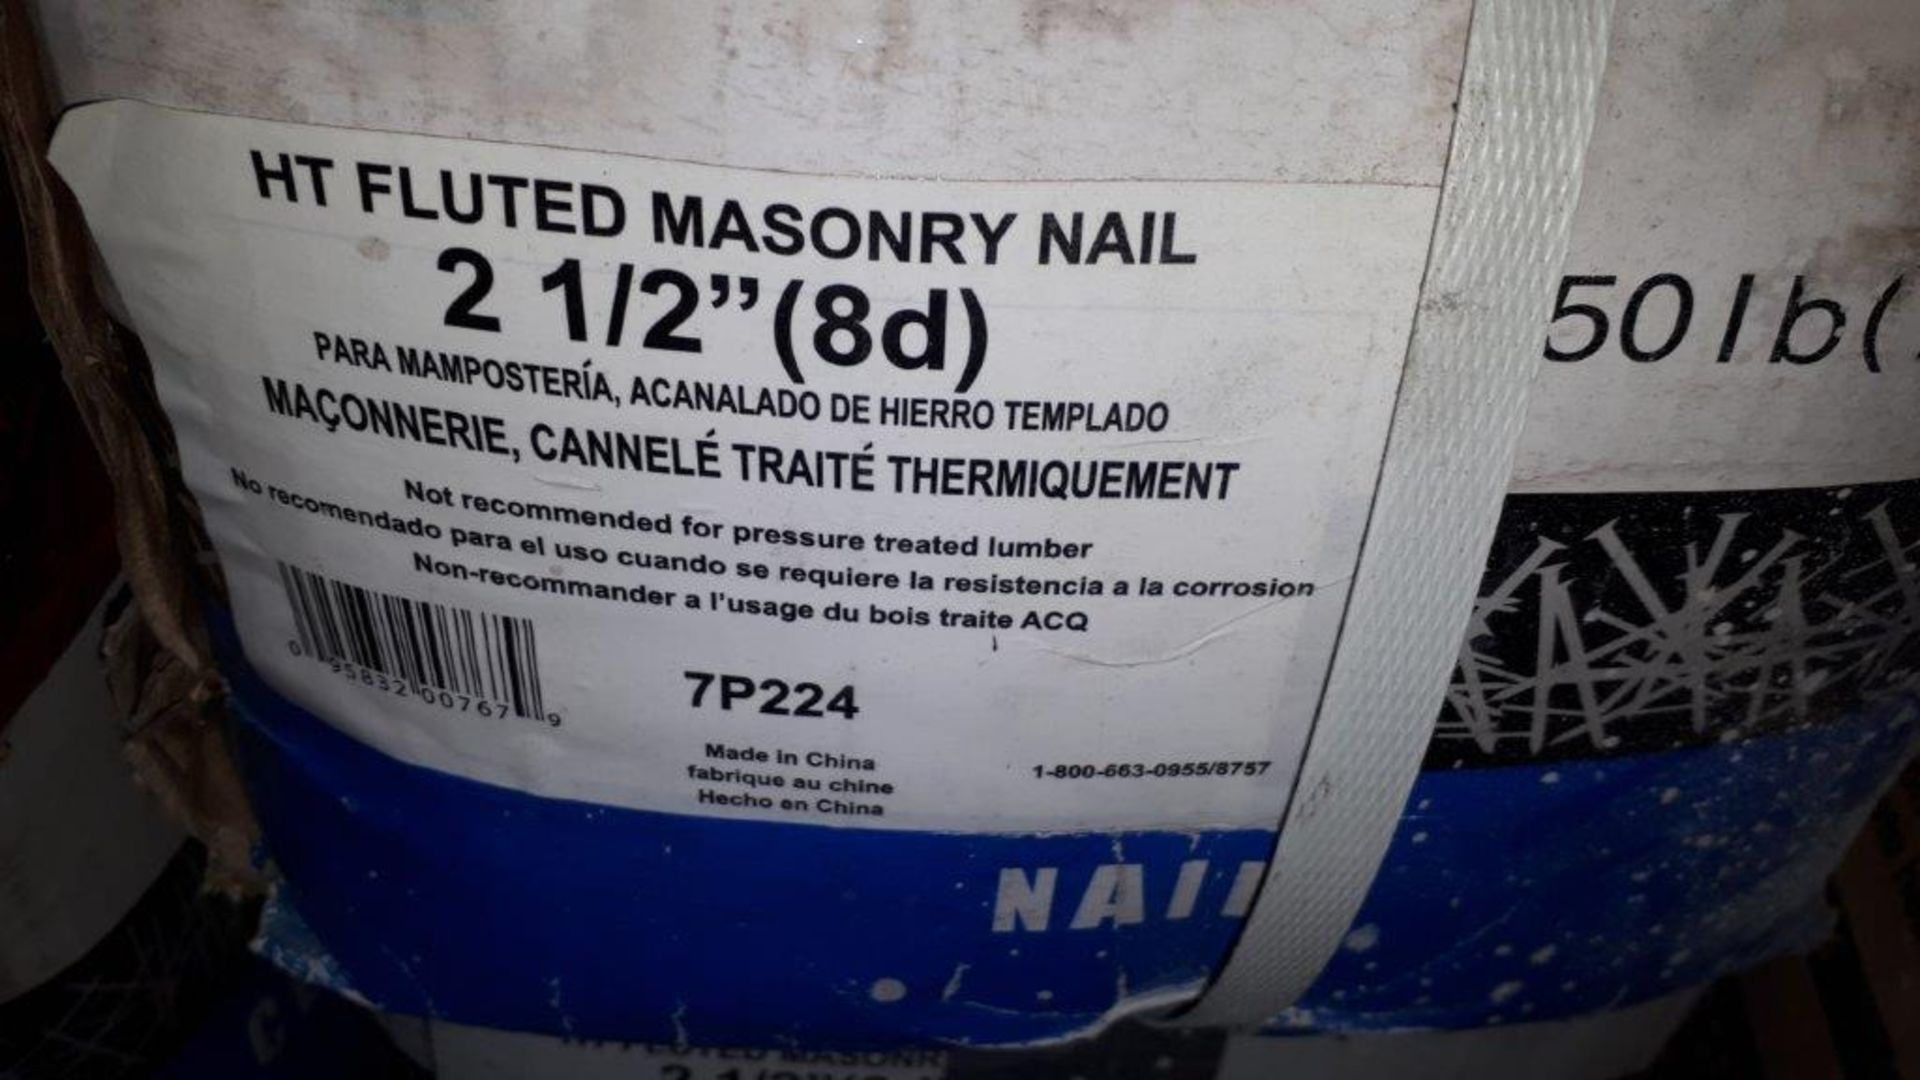 2 1/2" Masonry Nails (50lb/box)